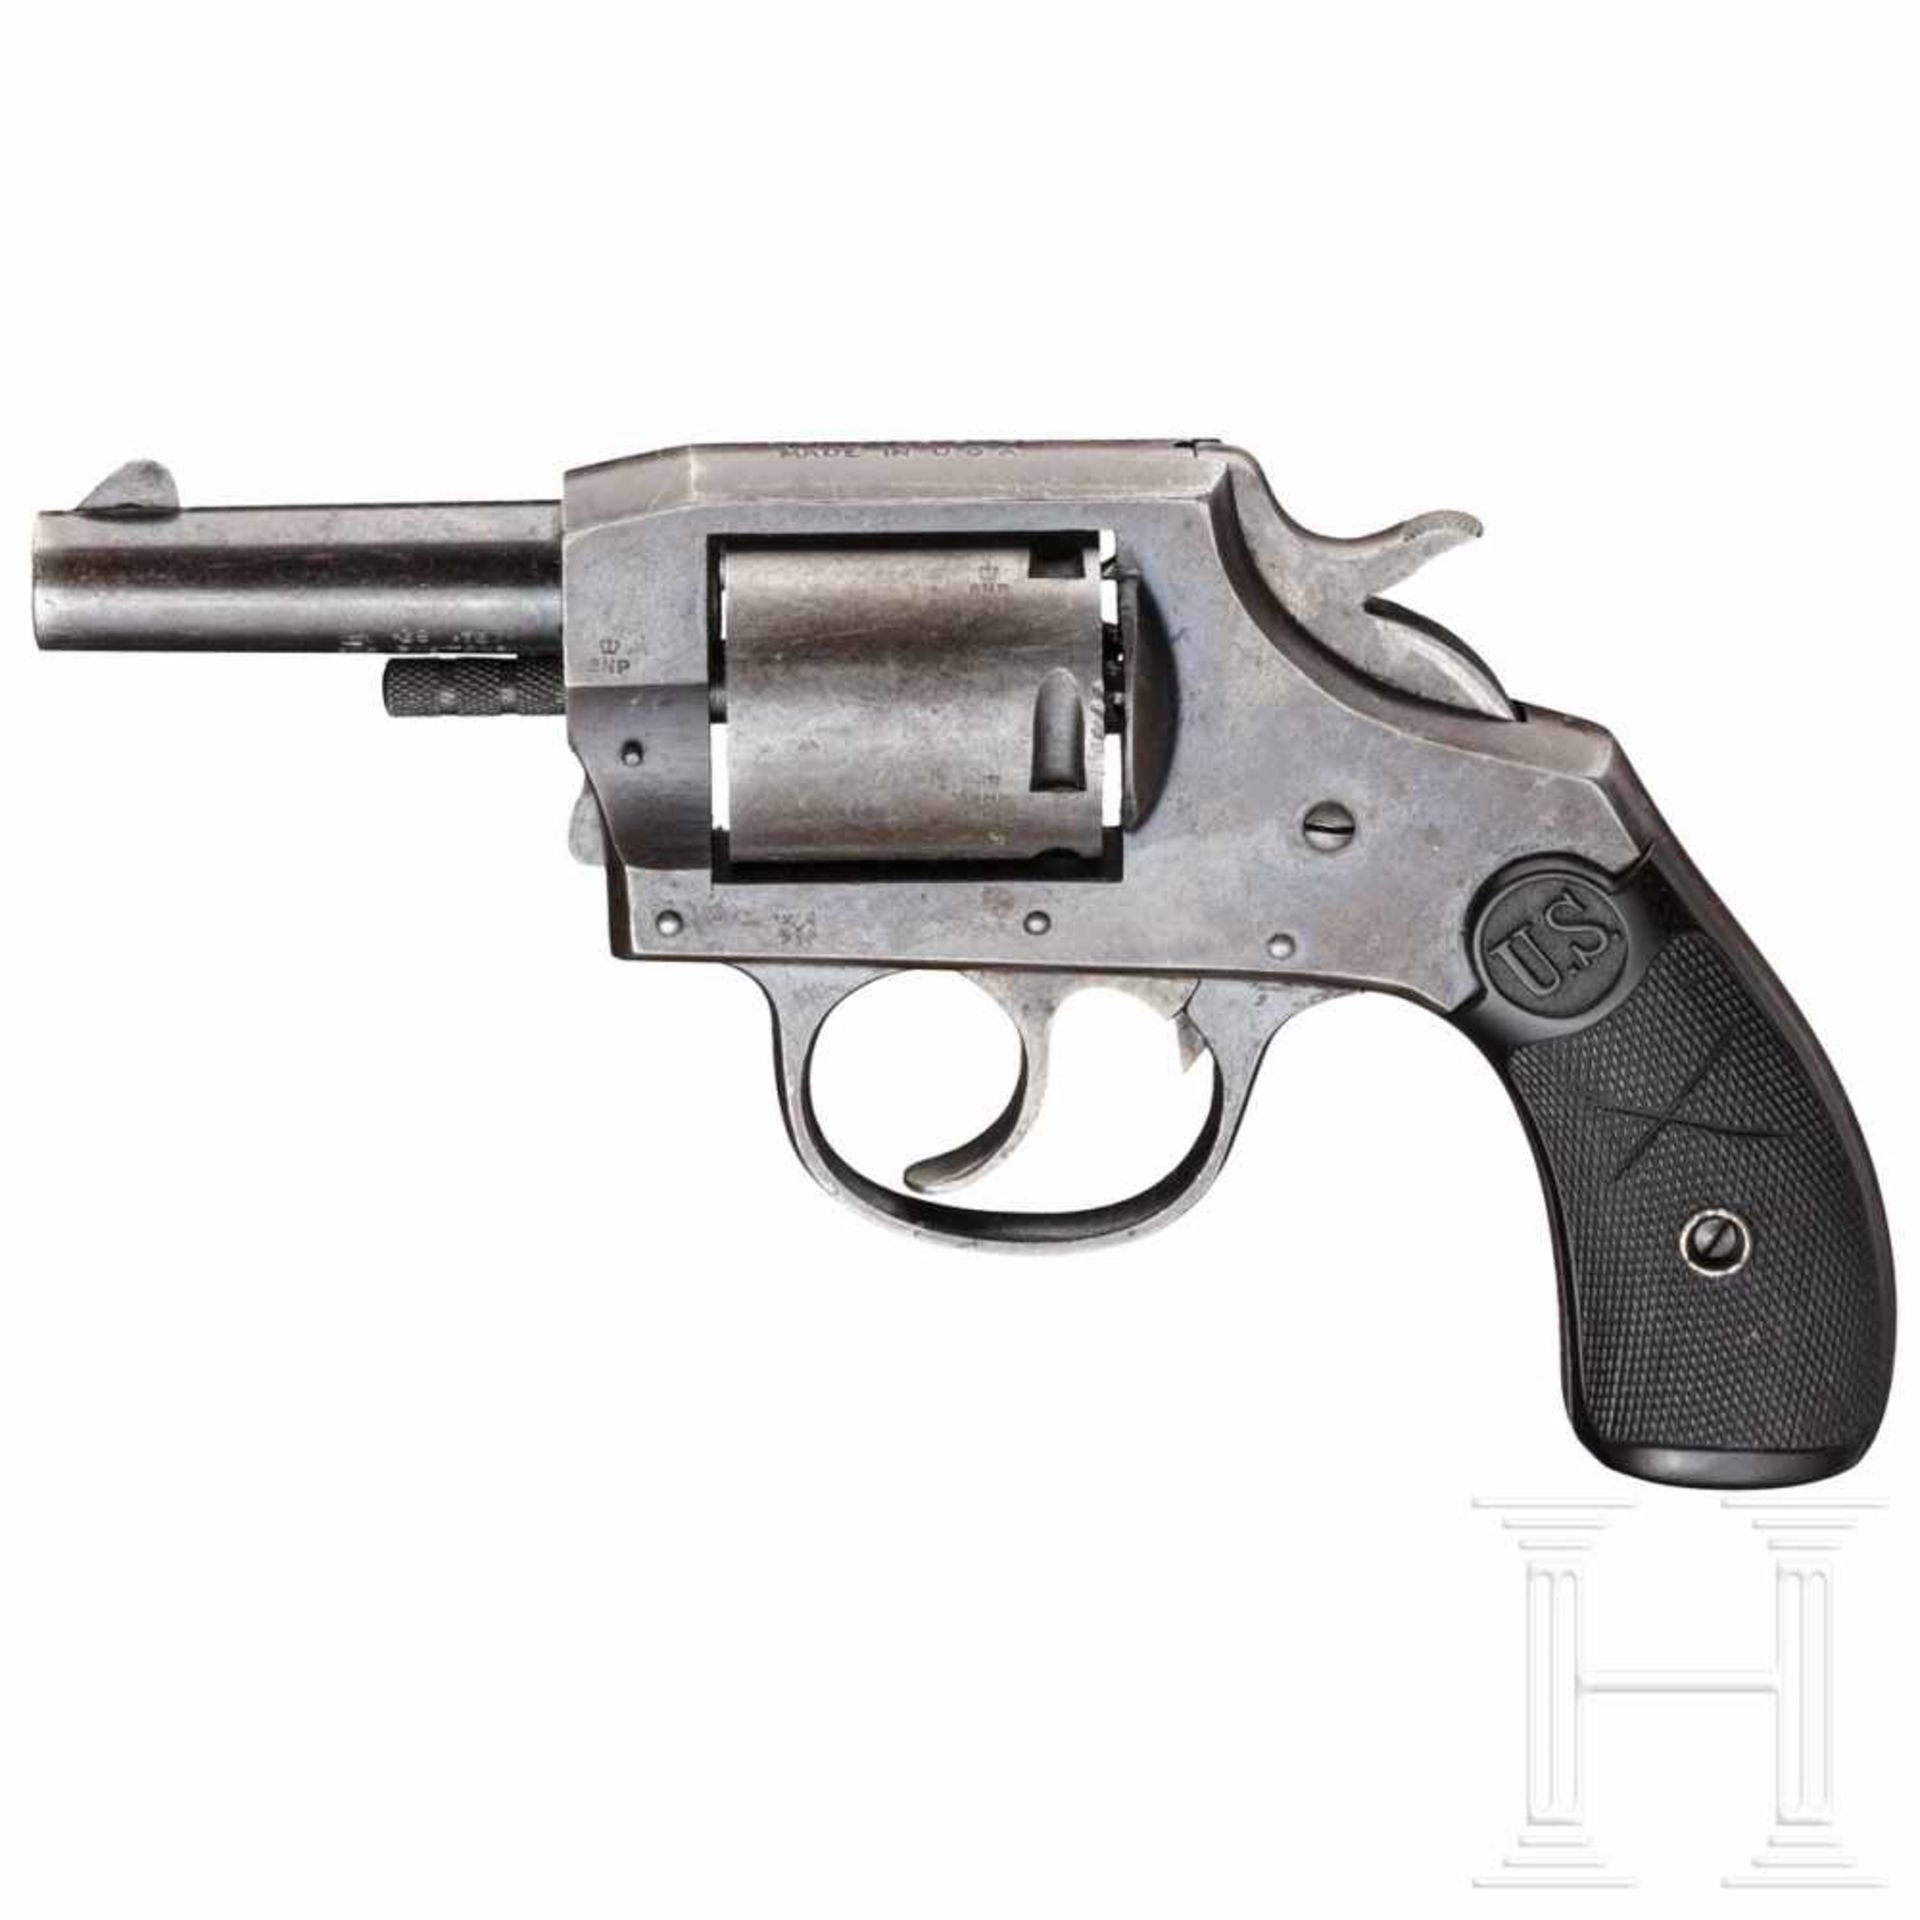 U.S. Revolver Co., Hilfsbewaffnung